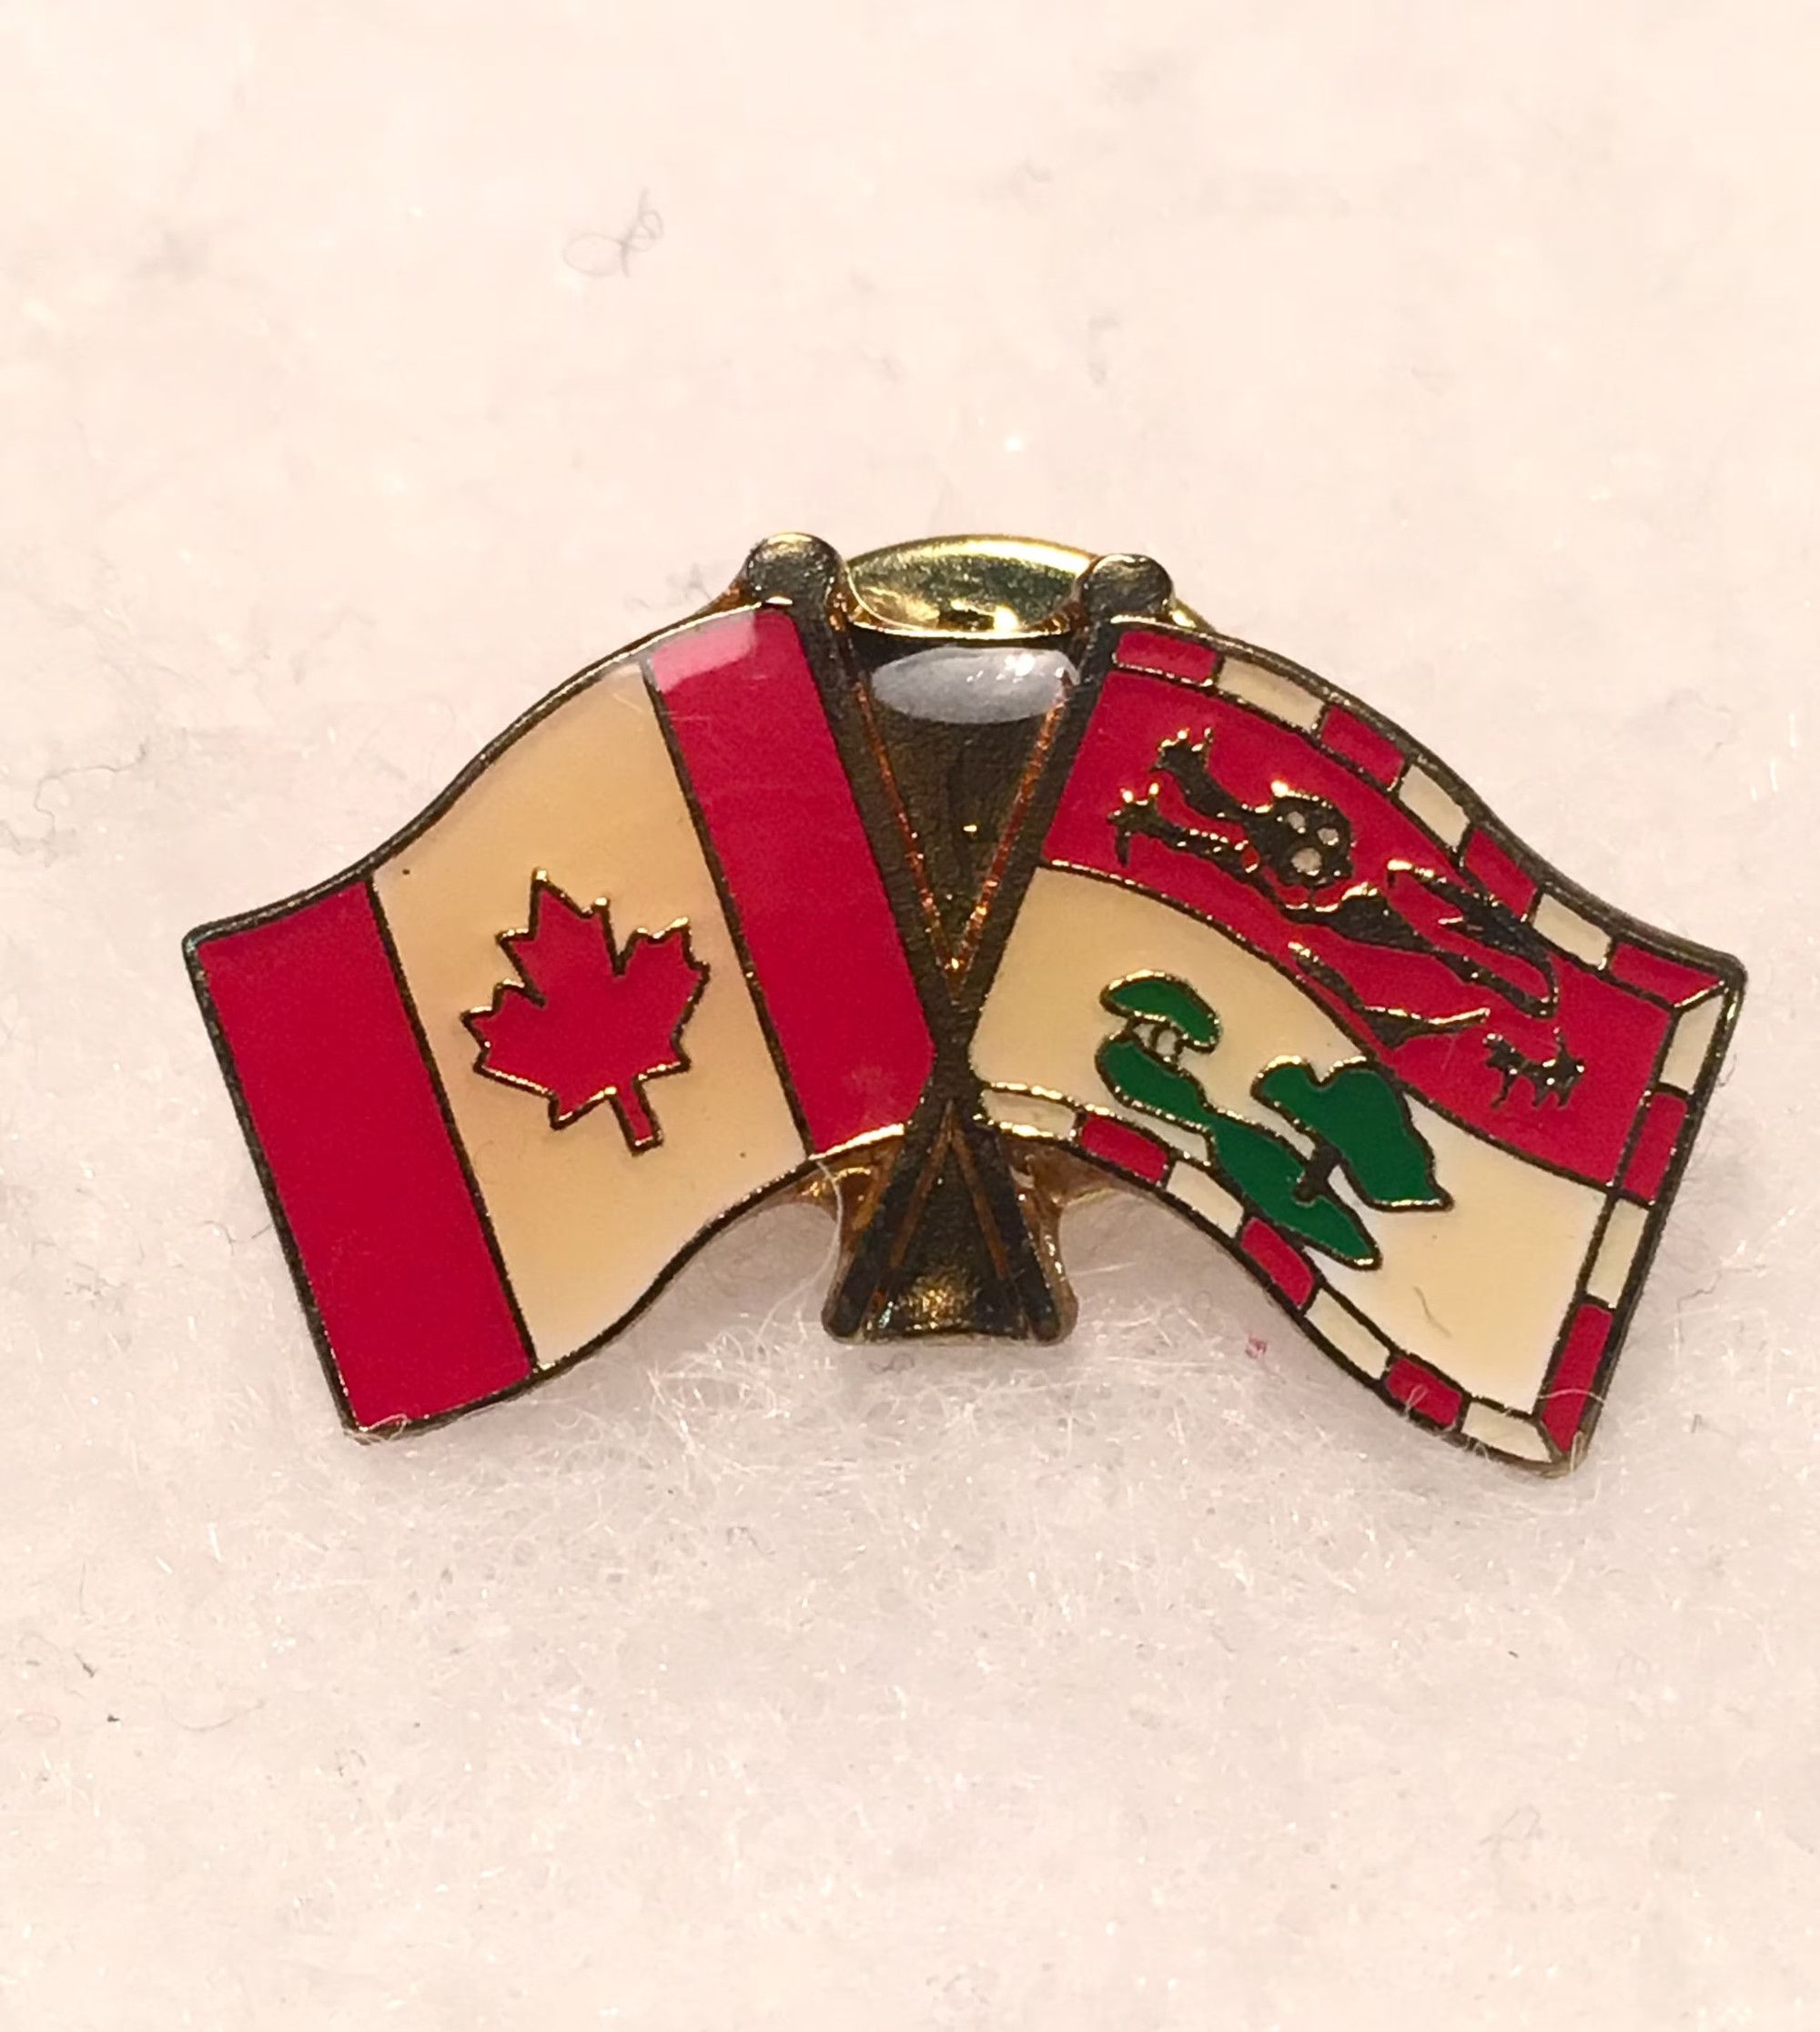 Canada & PEI Friendship Crossed Flag Lapel Pin